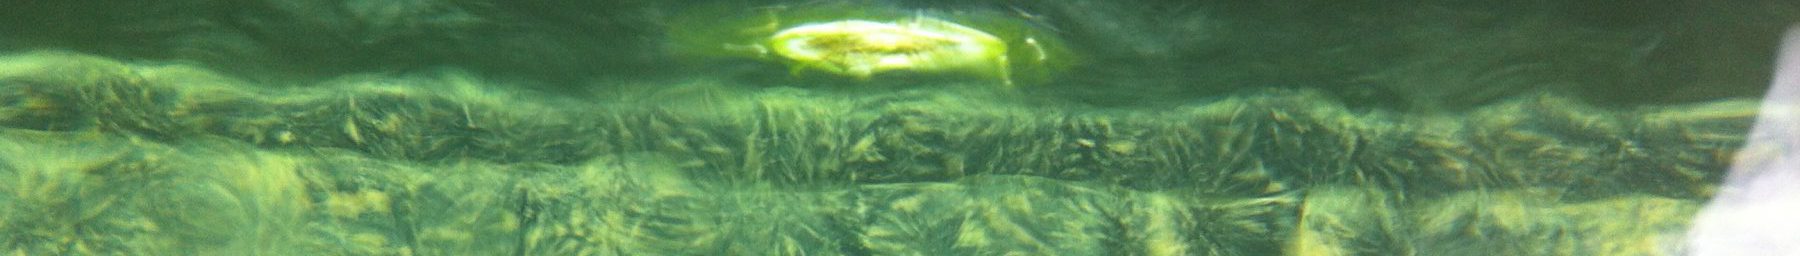 Le bio film dans les bassins et baignades naturelles